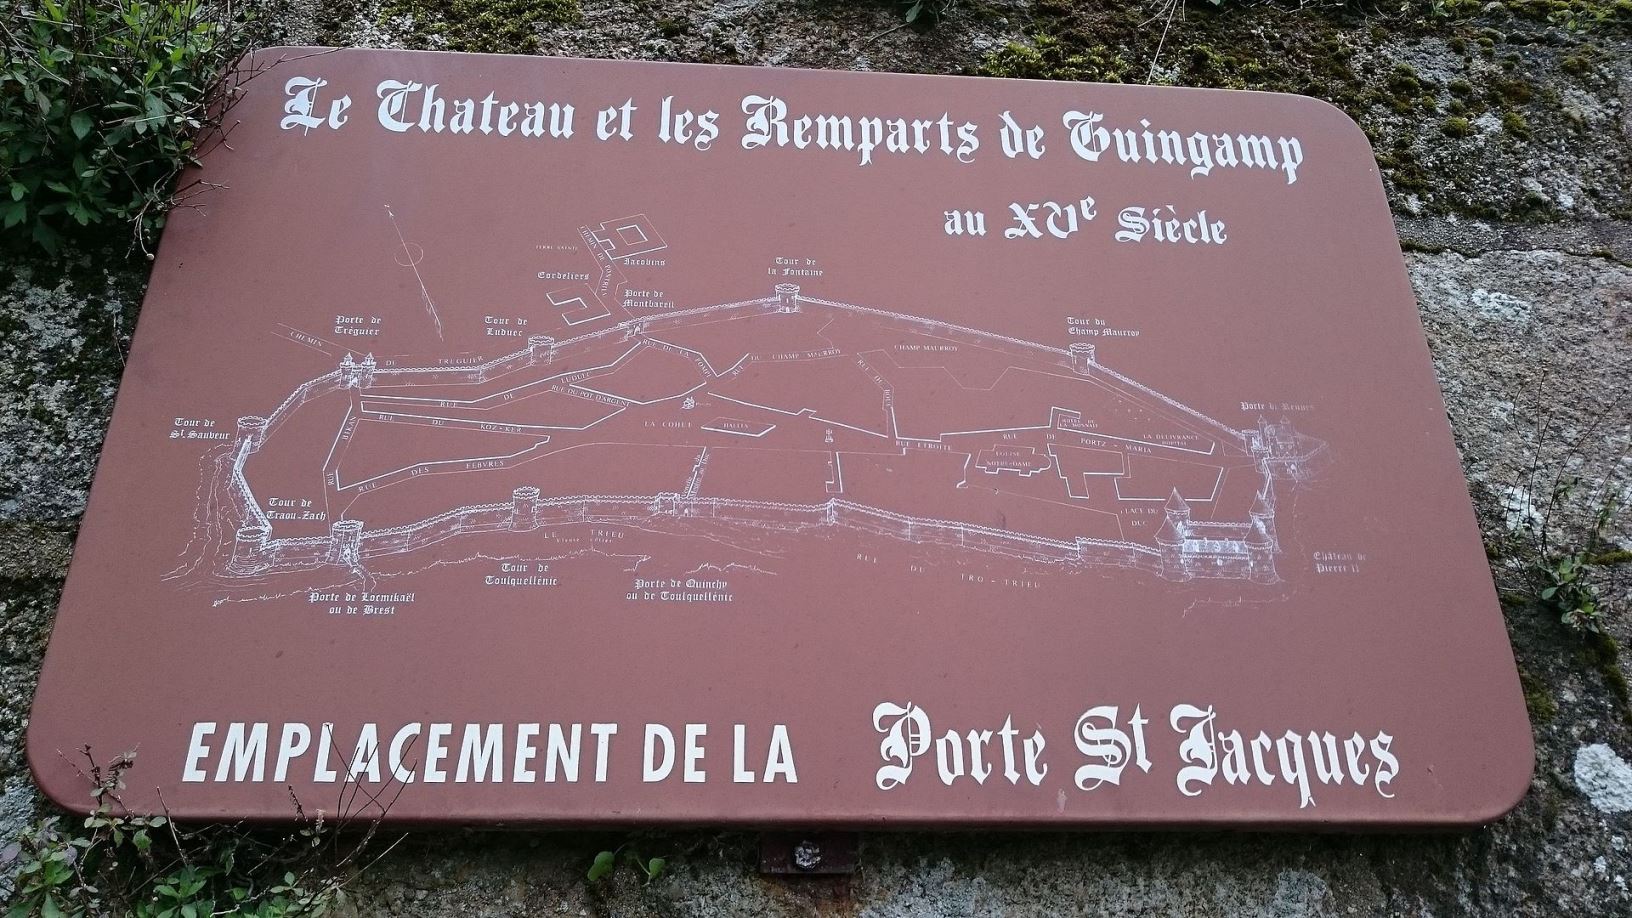 Panneau décrivant le plan des remparts de la ville de Guingamp, présents au XVe siecle. Crédit : Kingbastard, Wikipédia.